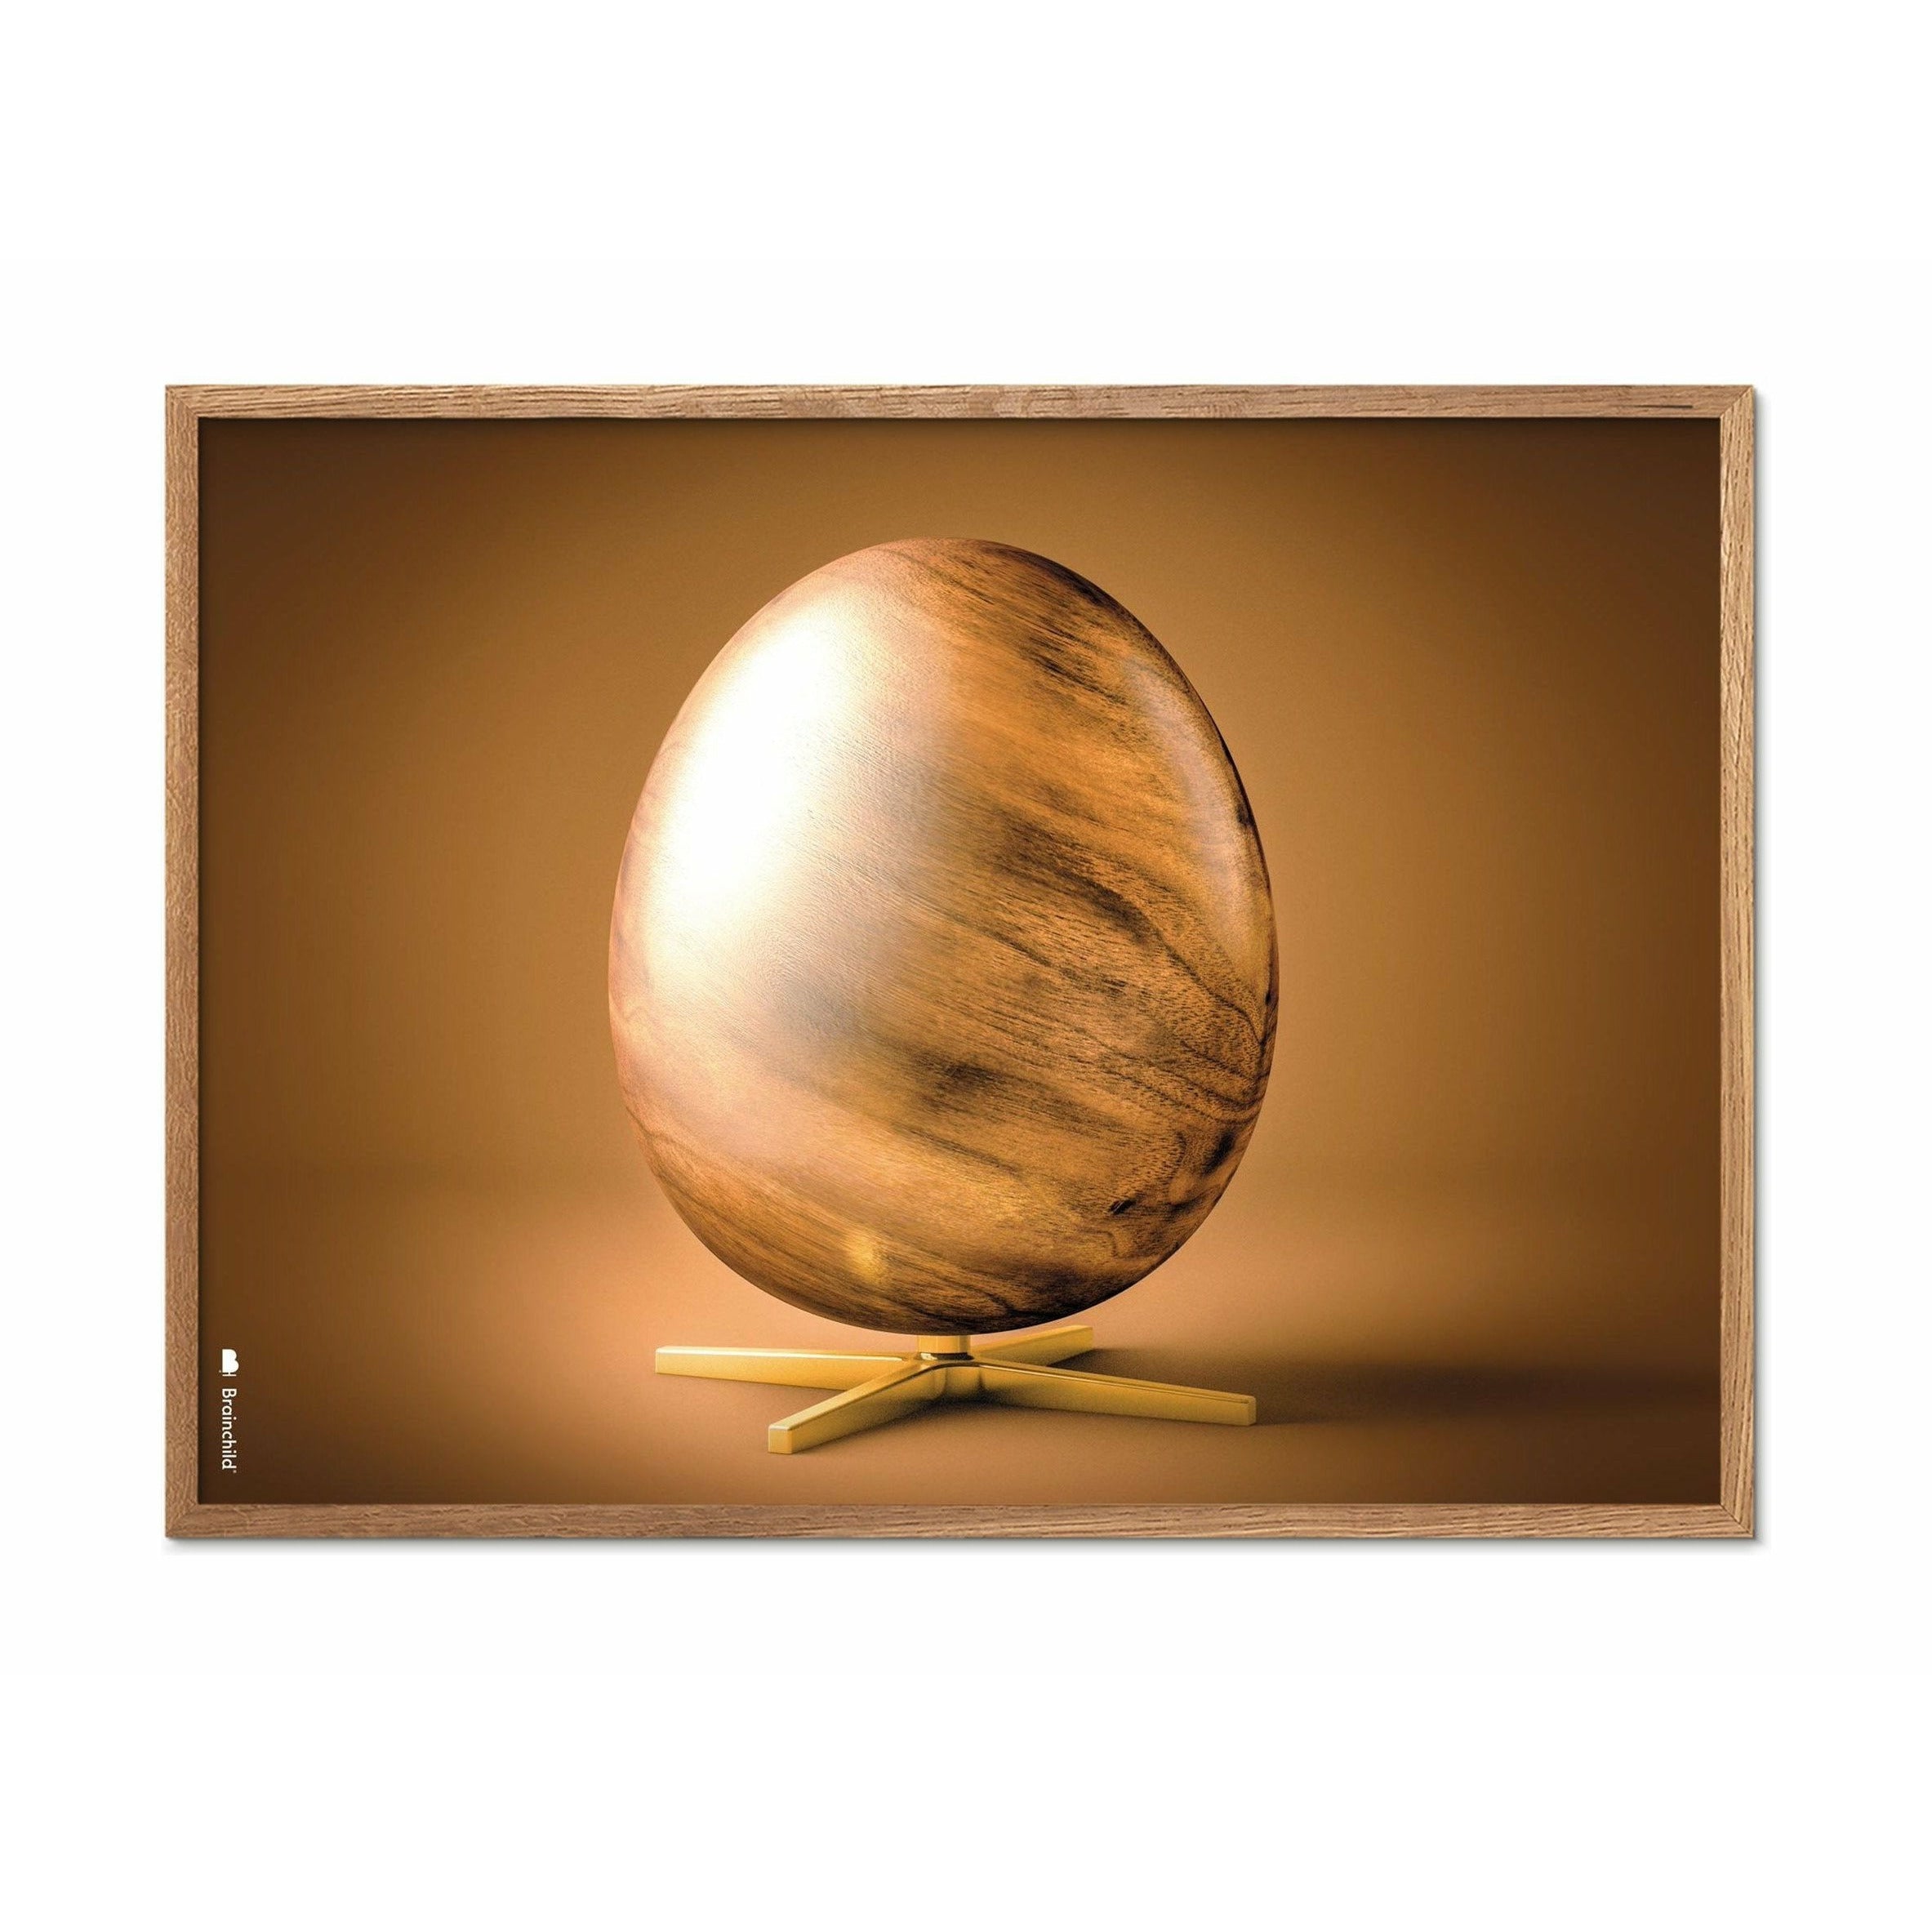 Plakát křížového formátu vajec z mozku, rám vyrobený z lehkého dřeva 70 x100 cm, hnědá